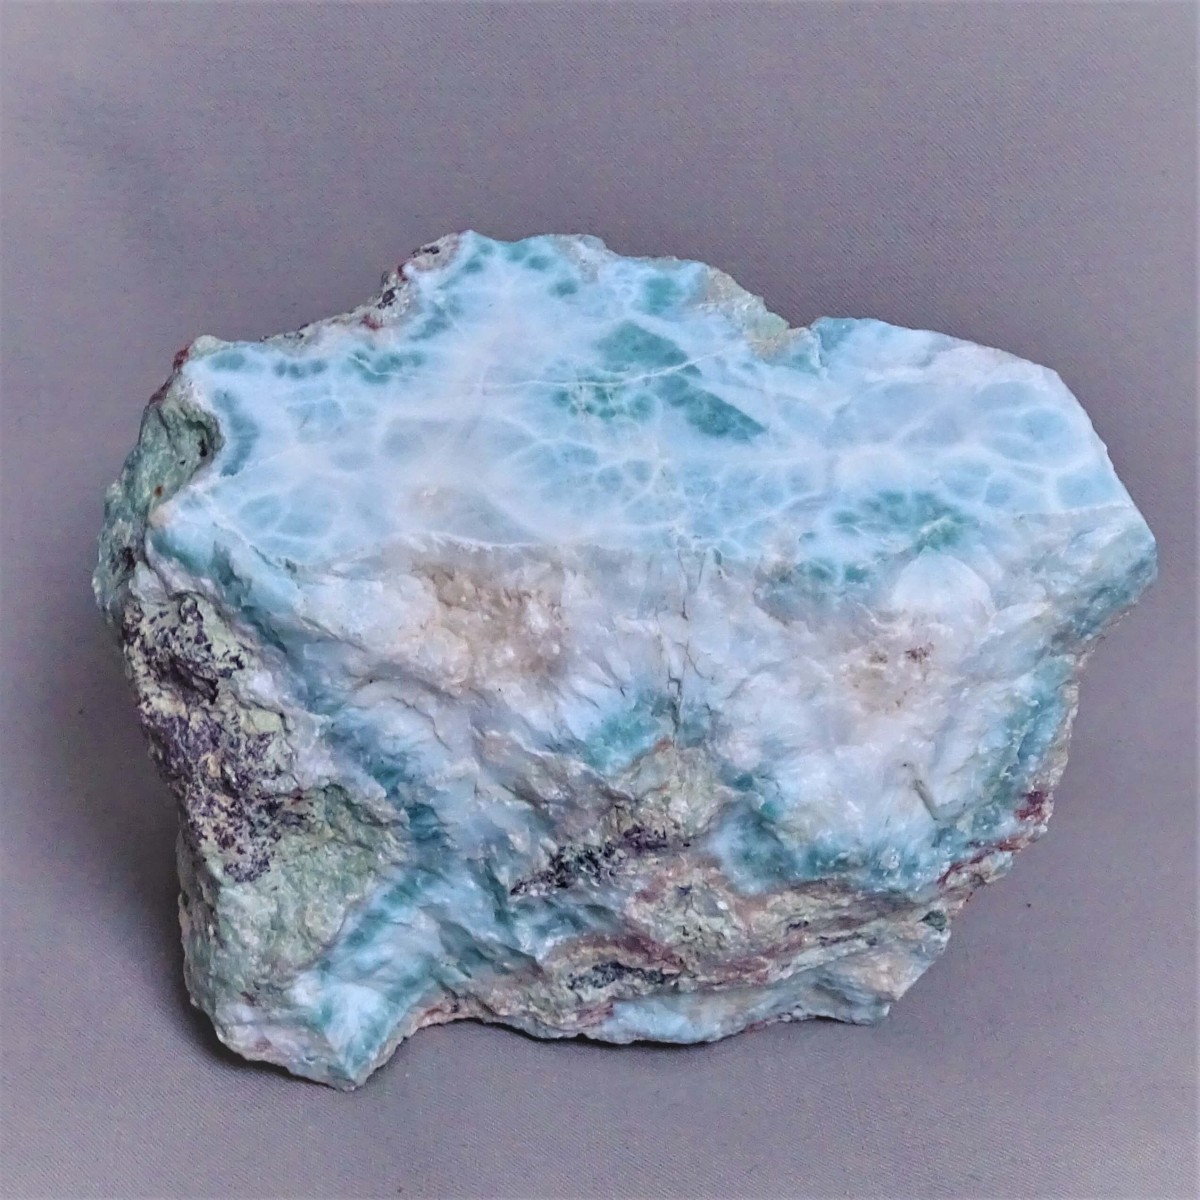 Larimar přírodní surový minerál 1353g, Dominikánská republika